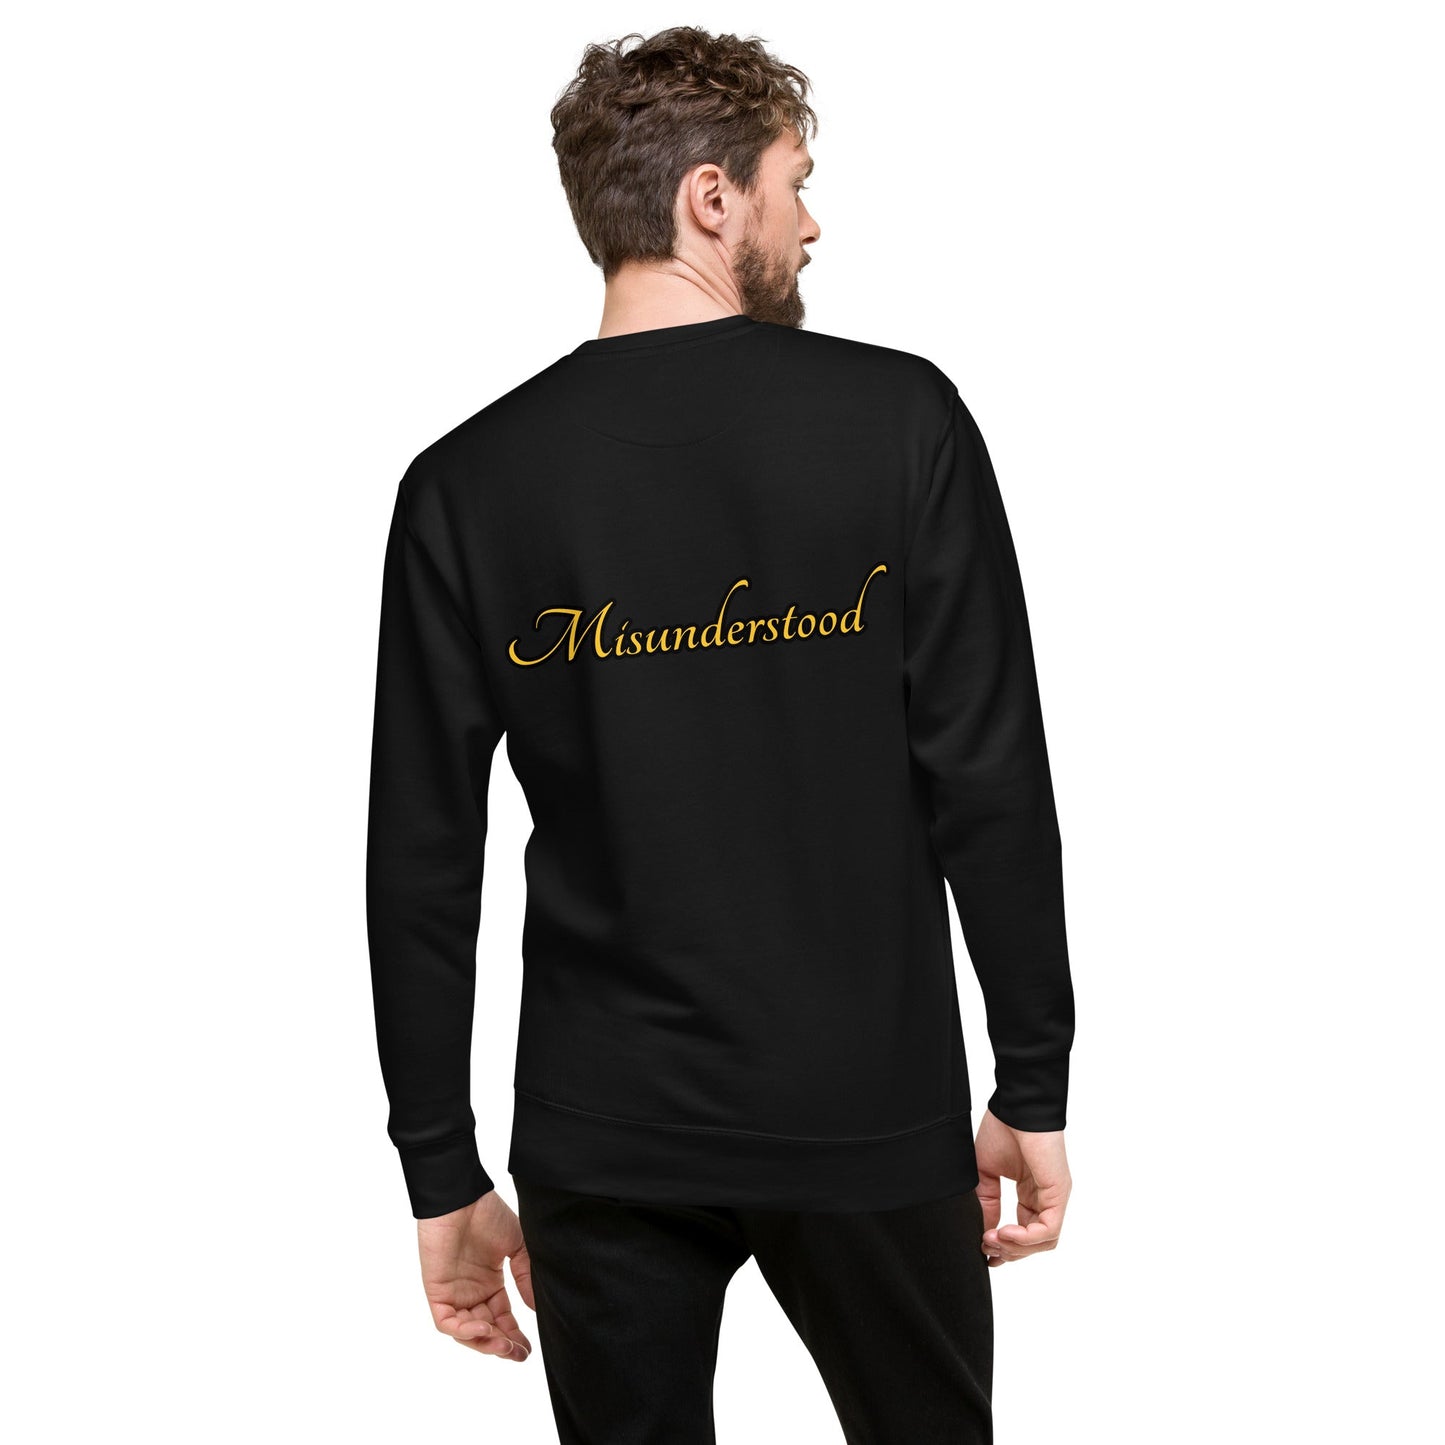 Misunderstood Unisex Premium Sweatshirt - Black - Weirdly Sensational